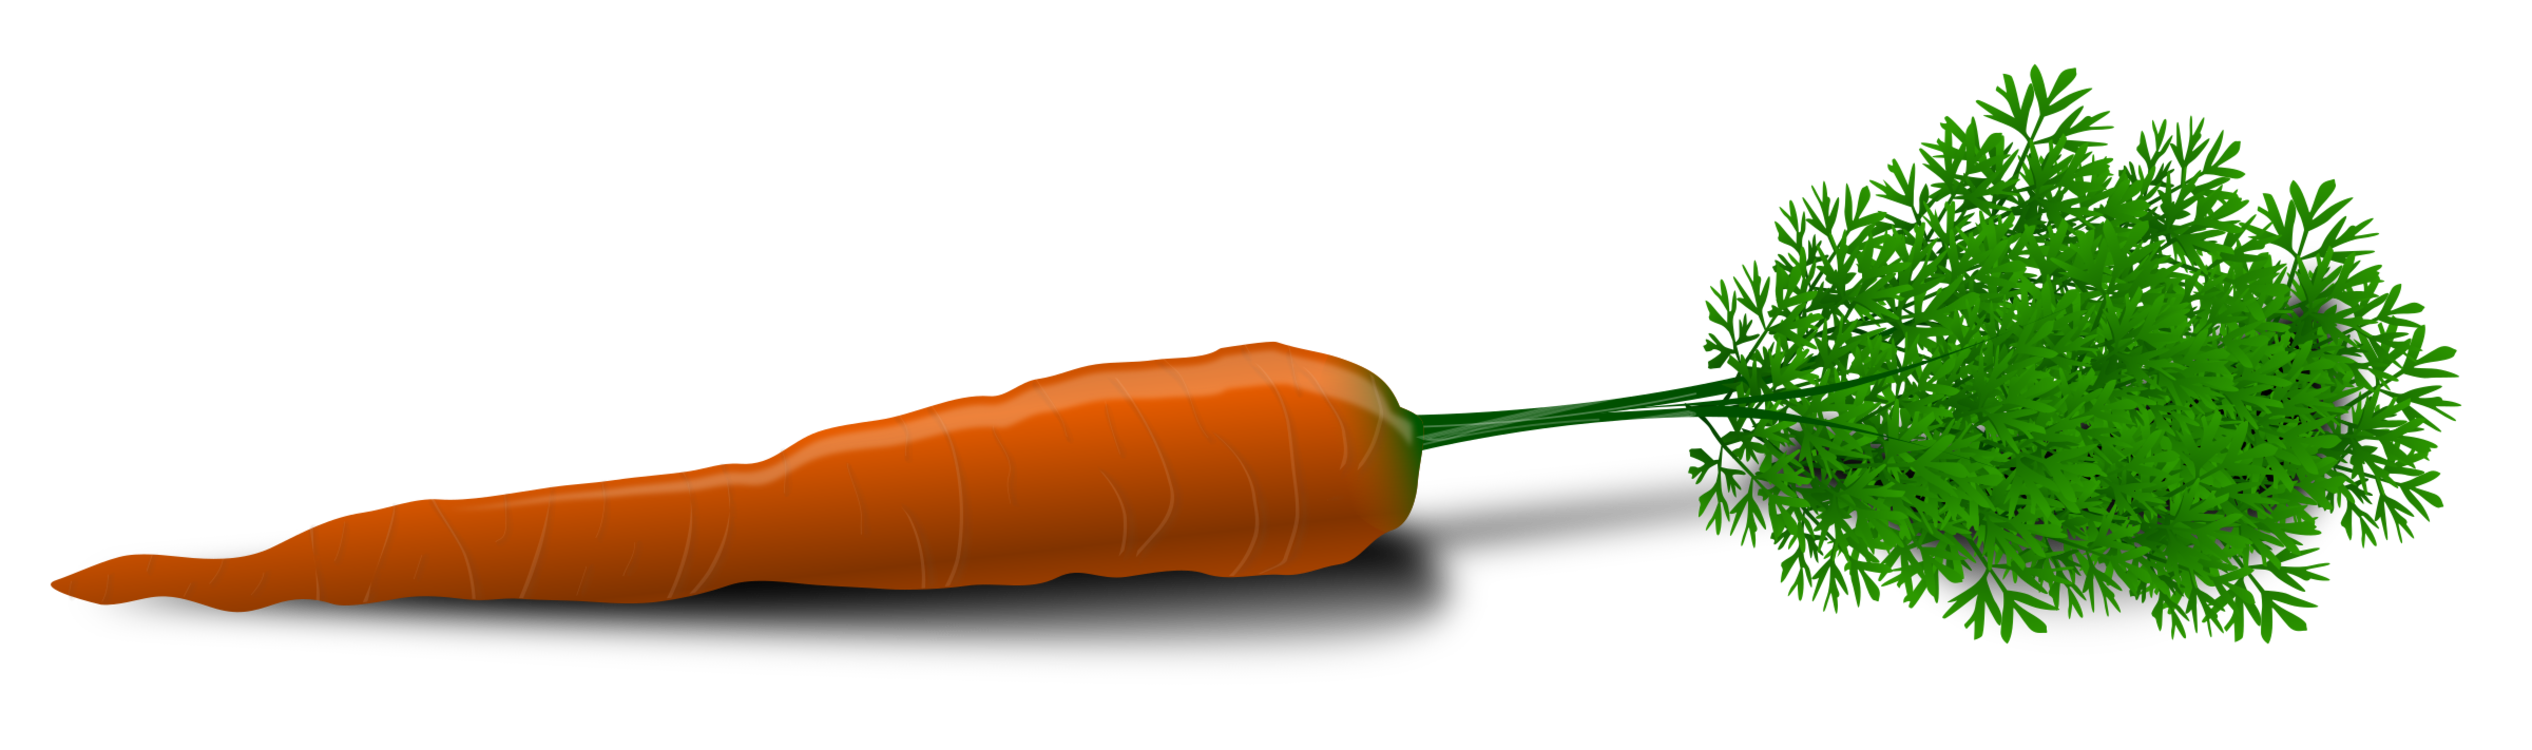 Vegetable,Carrot,Grass